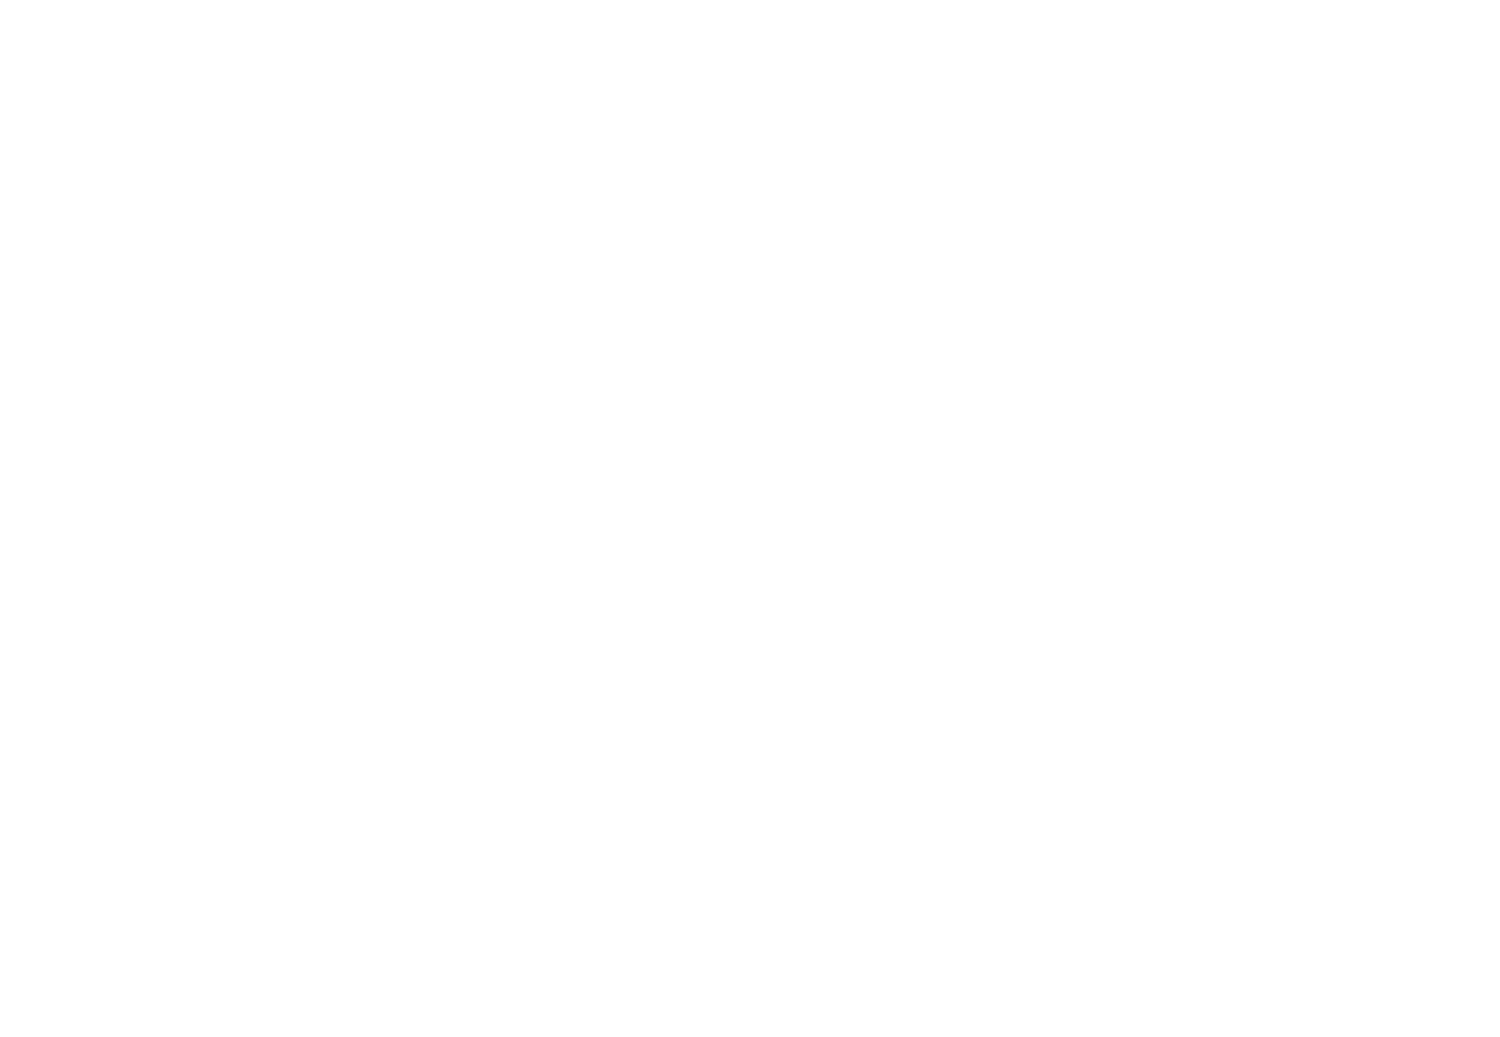 Water Street Design Associates